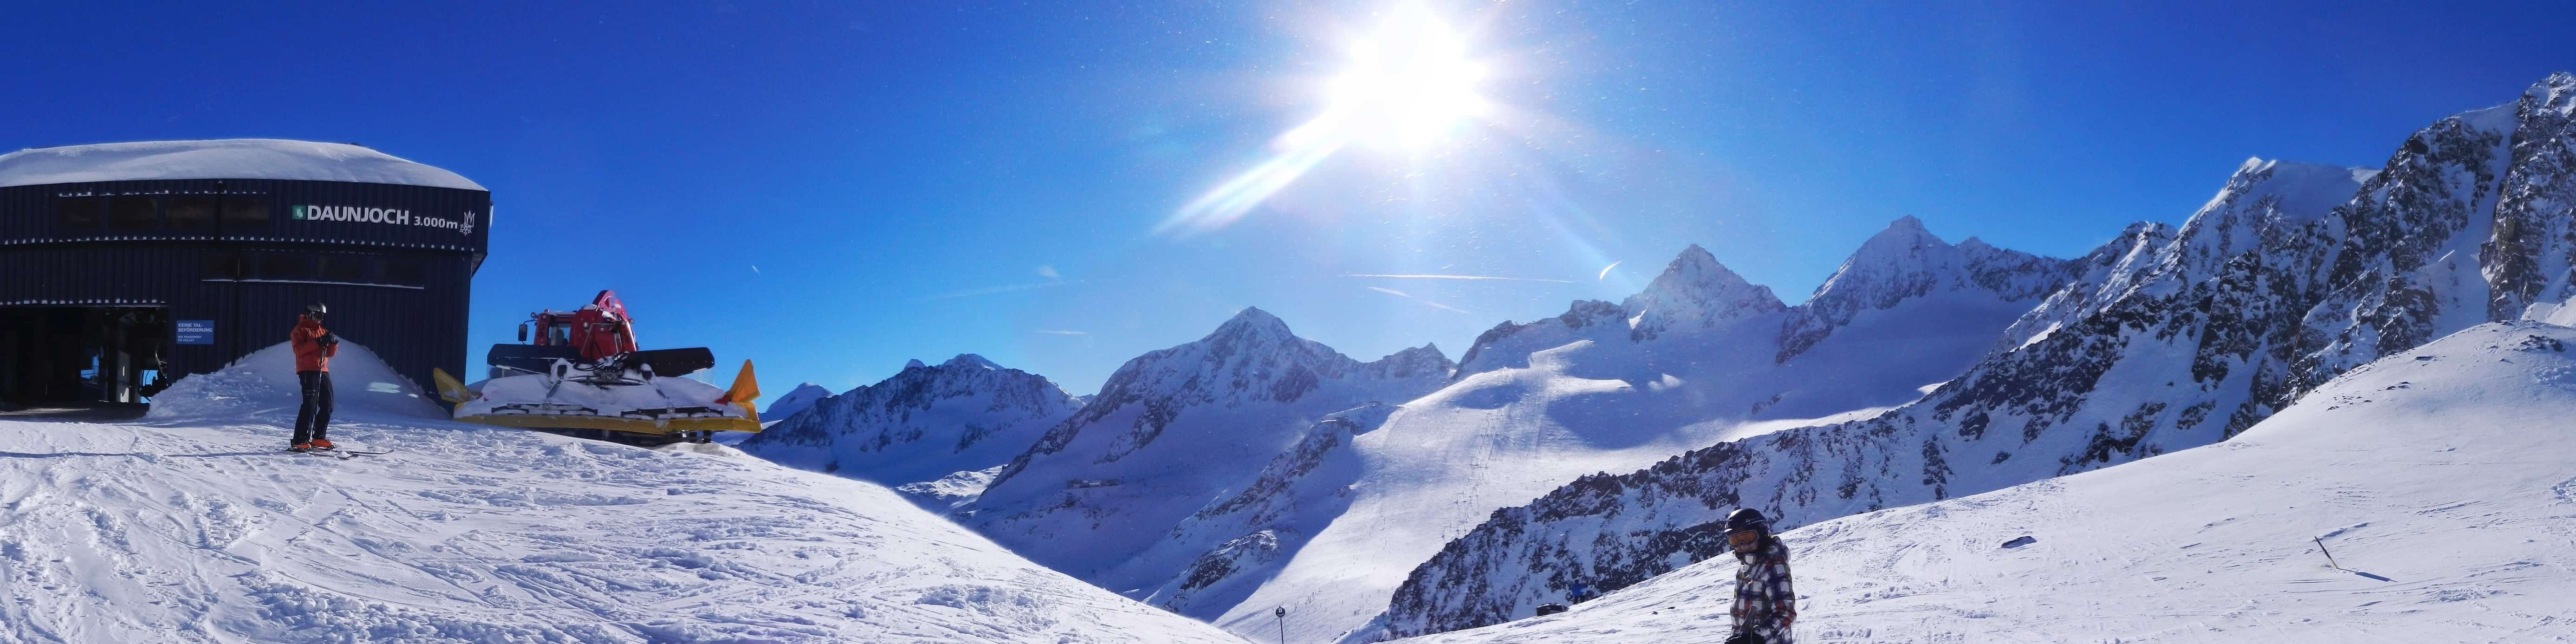 Kostenlose Bild Schnee Panorama Tal Sonnenschein Berge Winter Kalte Landschaft Eis Gletscher